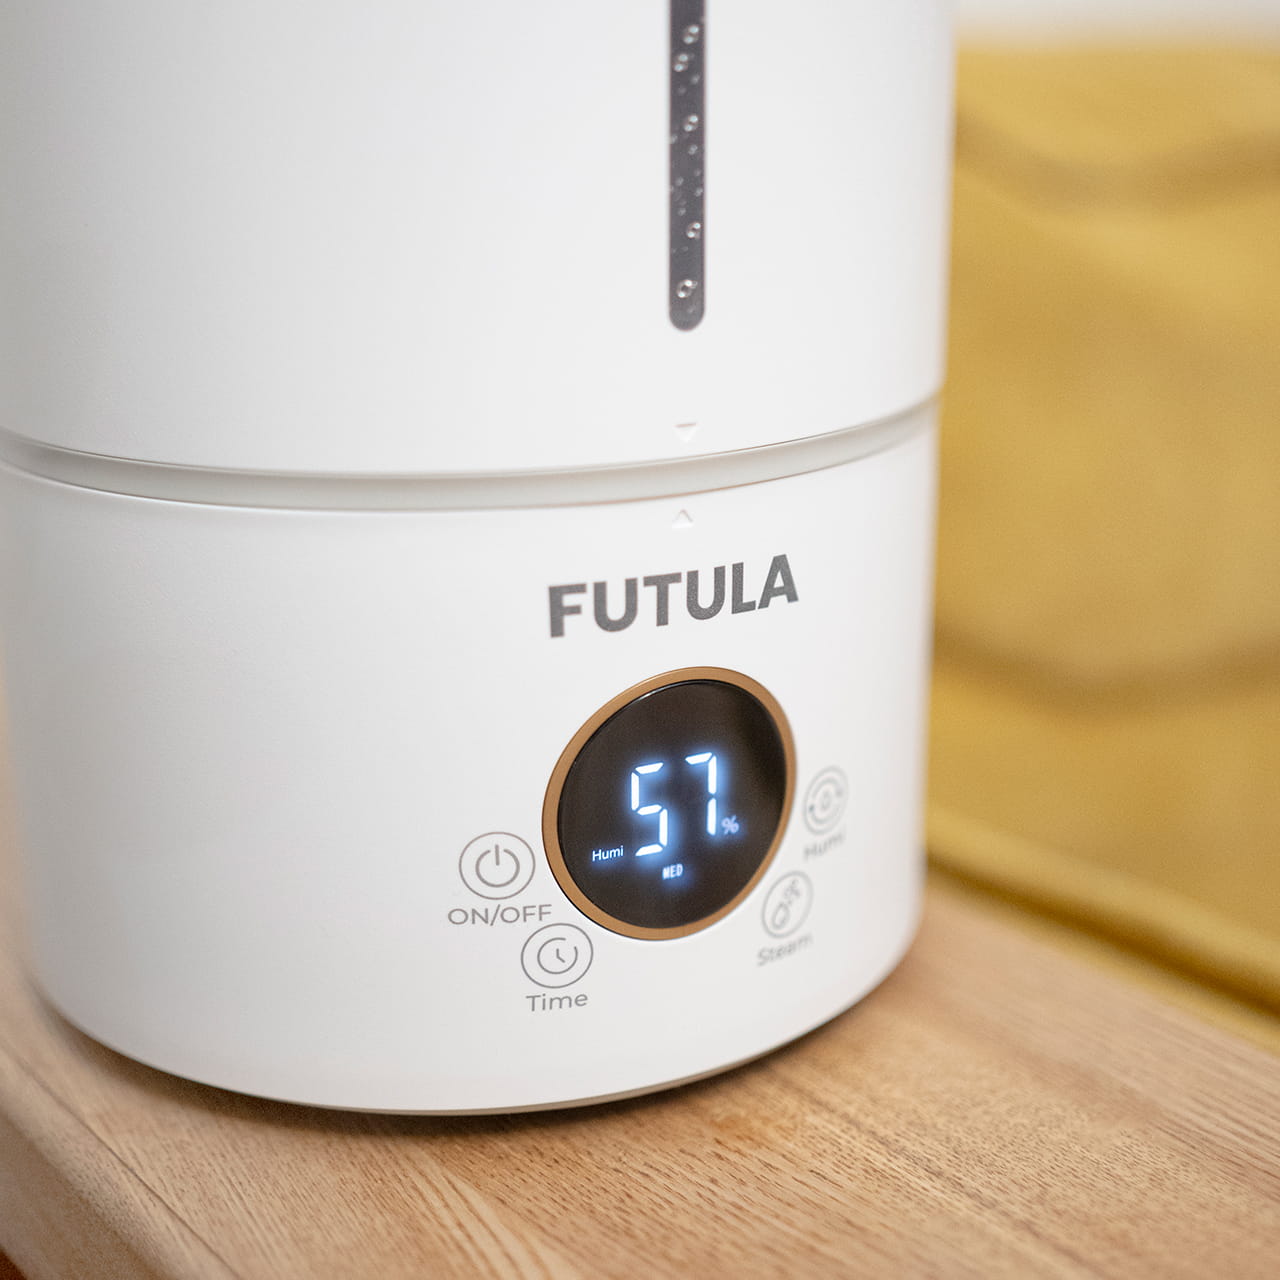 Futula Humidifier H2S крайне прост в использовании: включение и настройка интенсивности увлажнения воздуха осуществляются с помощью сенсорных кнопок на лицевой части устройства